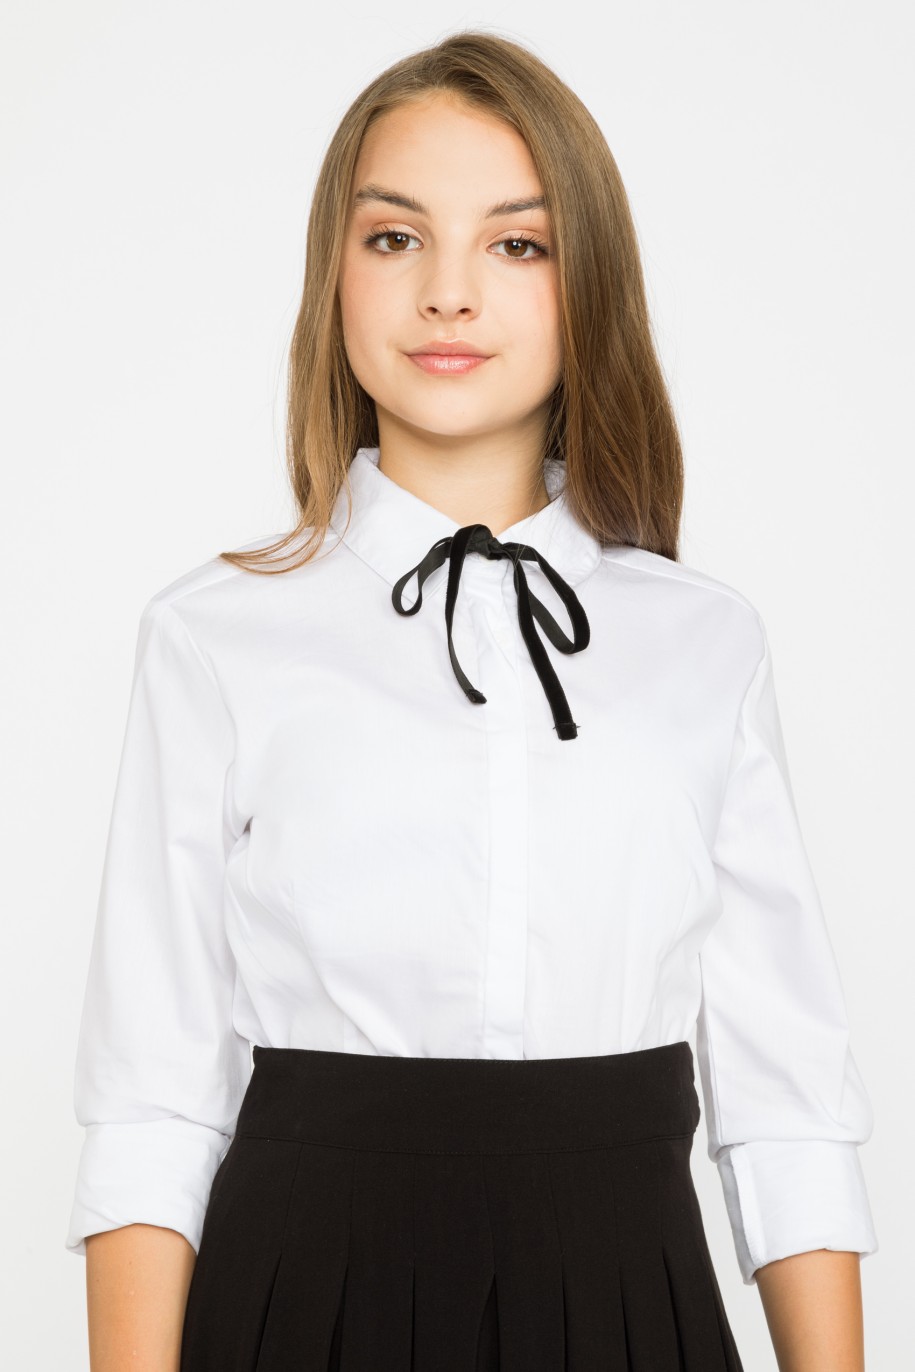 Biała elegancka koszula z ozdobną czarną tasiemką dla dziewczyny - 29412